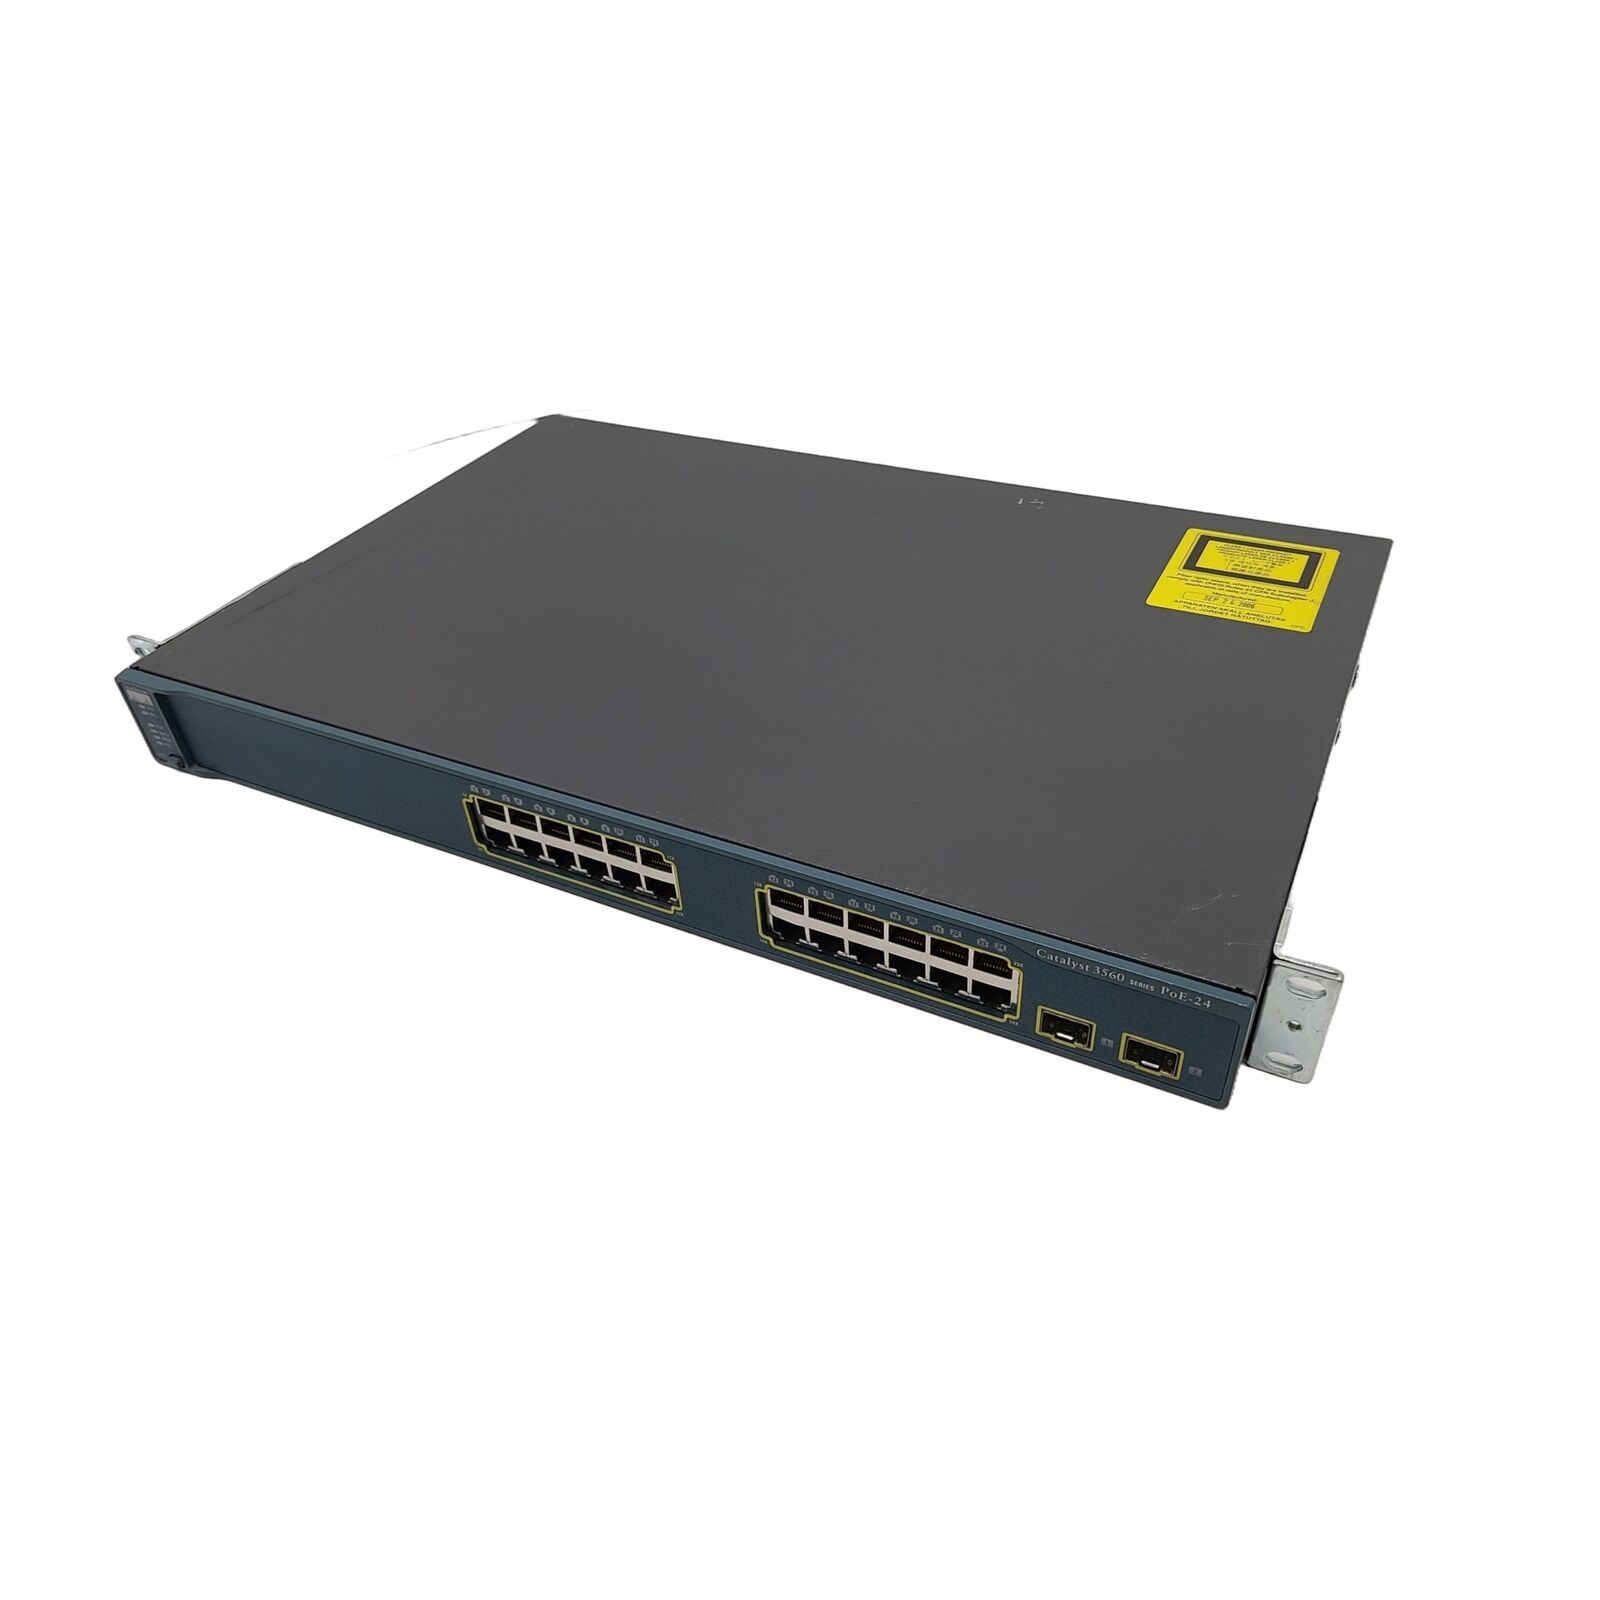 Cisco Catalyst 3560 WS-C3560-24PS-S 24 Port POE Switch